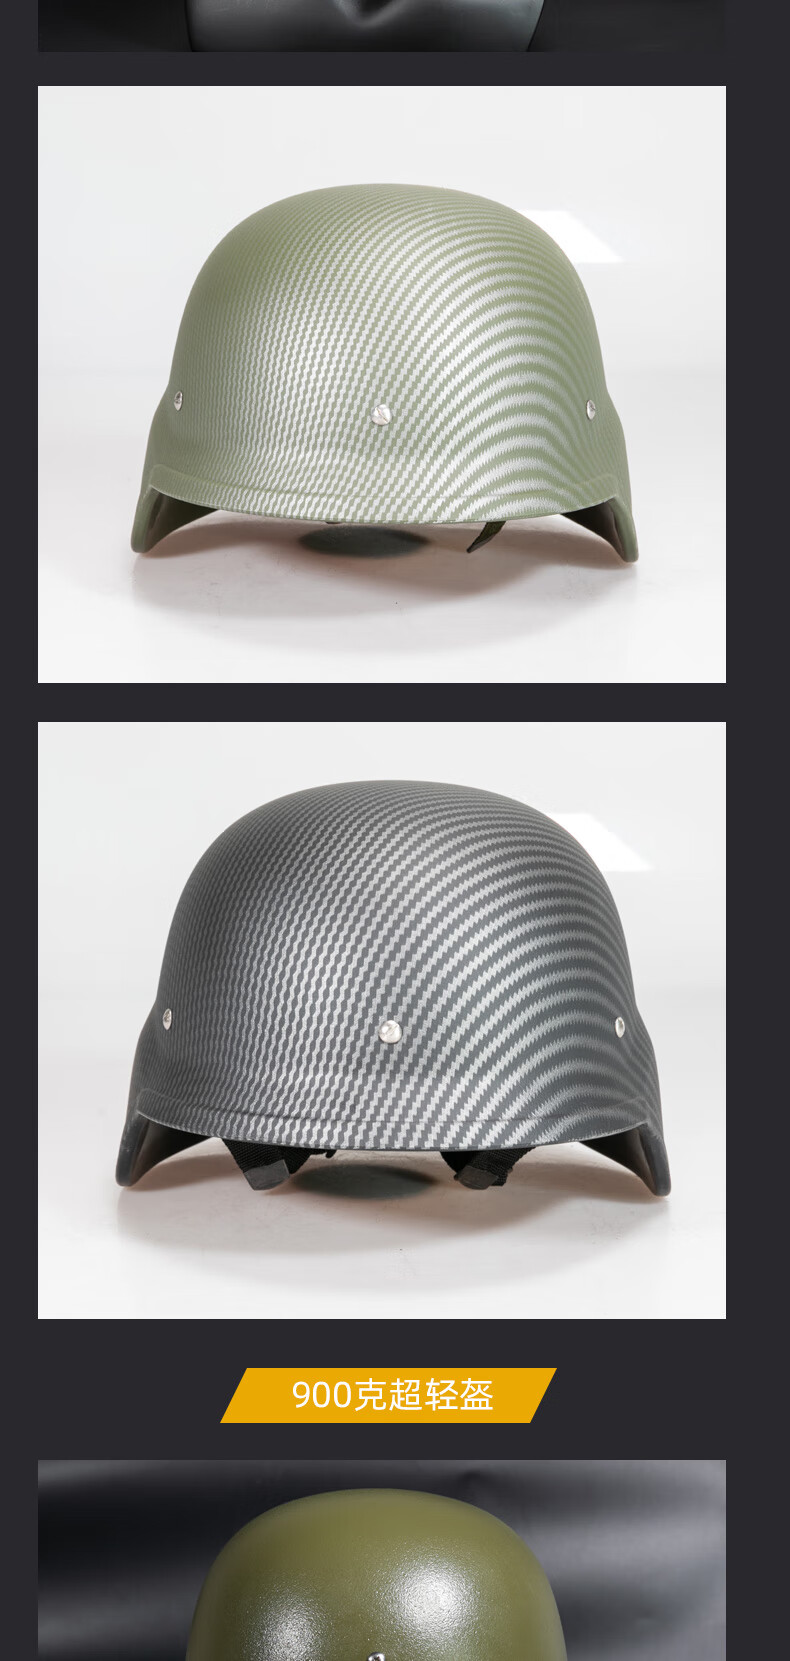 川微宝03凯夫拉超轻头盔训练盔碳纤维纹塑料轻型钢盔羊皮悬挂系统